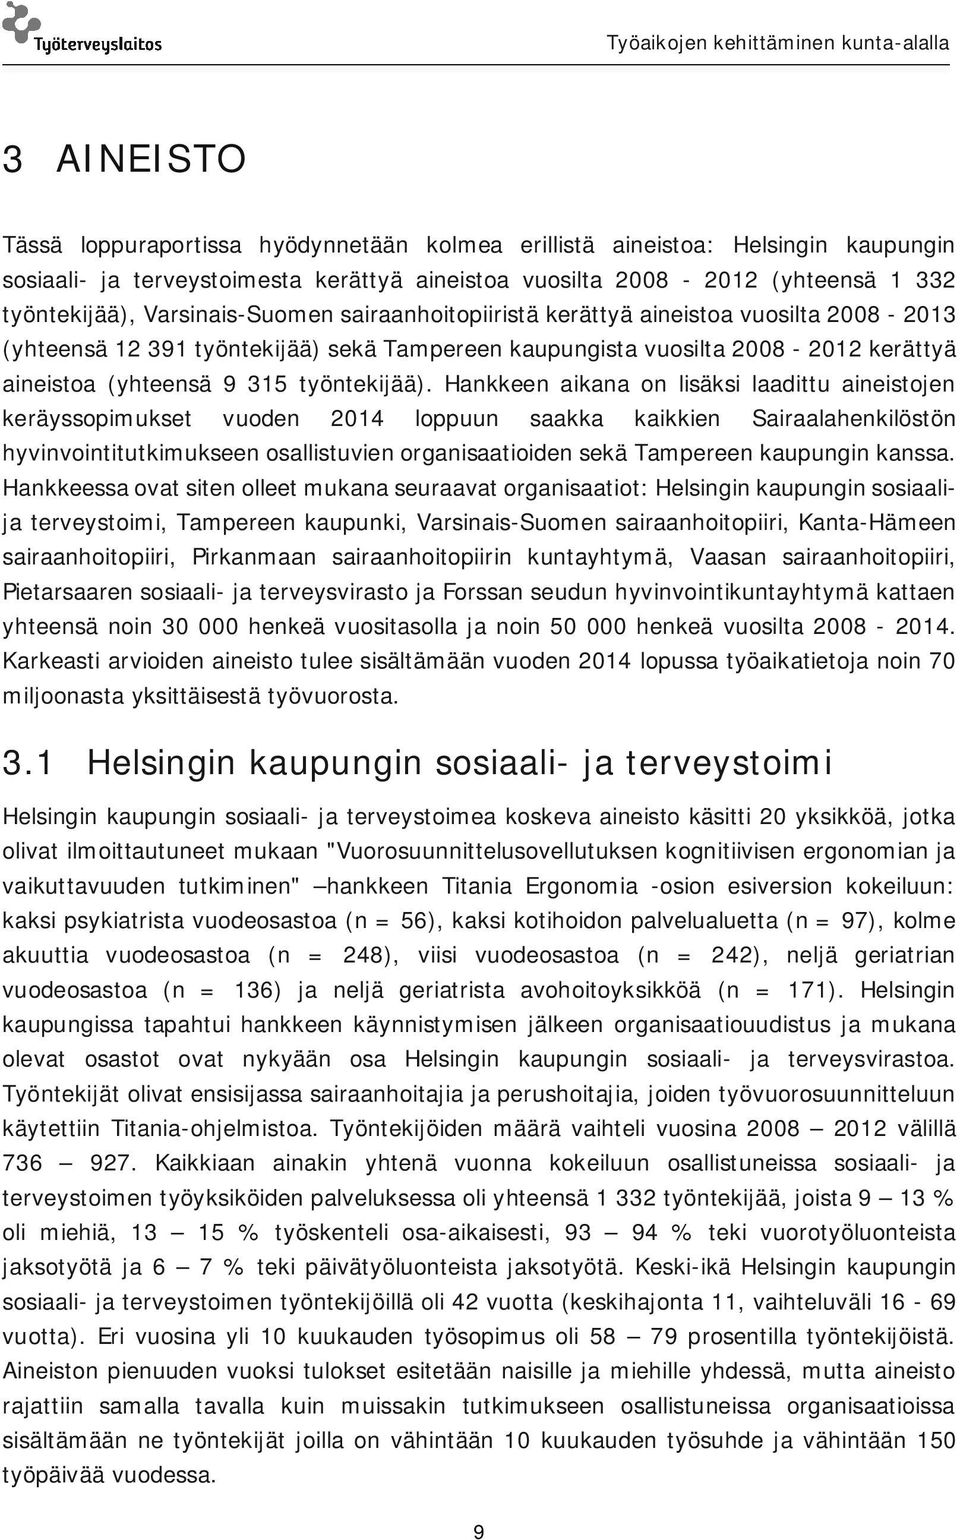 Hankkeen aikana on lisäksi laadittu aineistojen keräyssopimukset vuoden 2014 loppuun saakka kaikkien Sairaalahenkilöstön hyvinvointitutkimukseen osallistuvien organisaatioiden sekä Tampereen